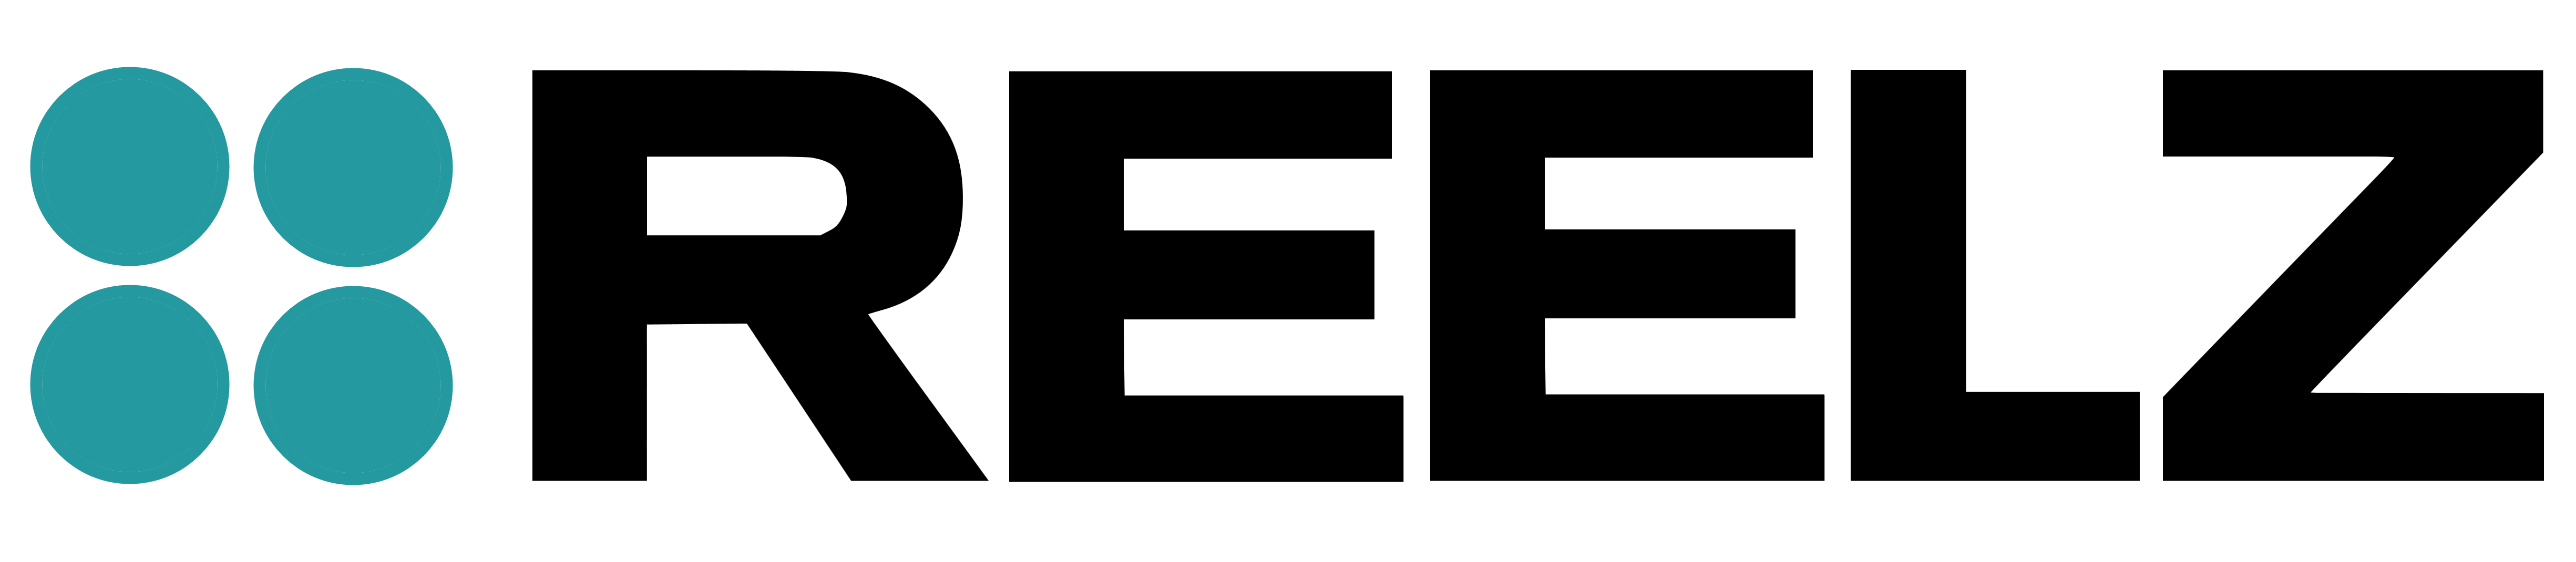 Reelz logo, logotype